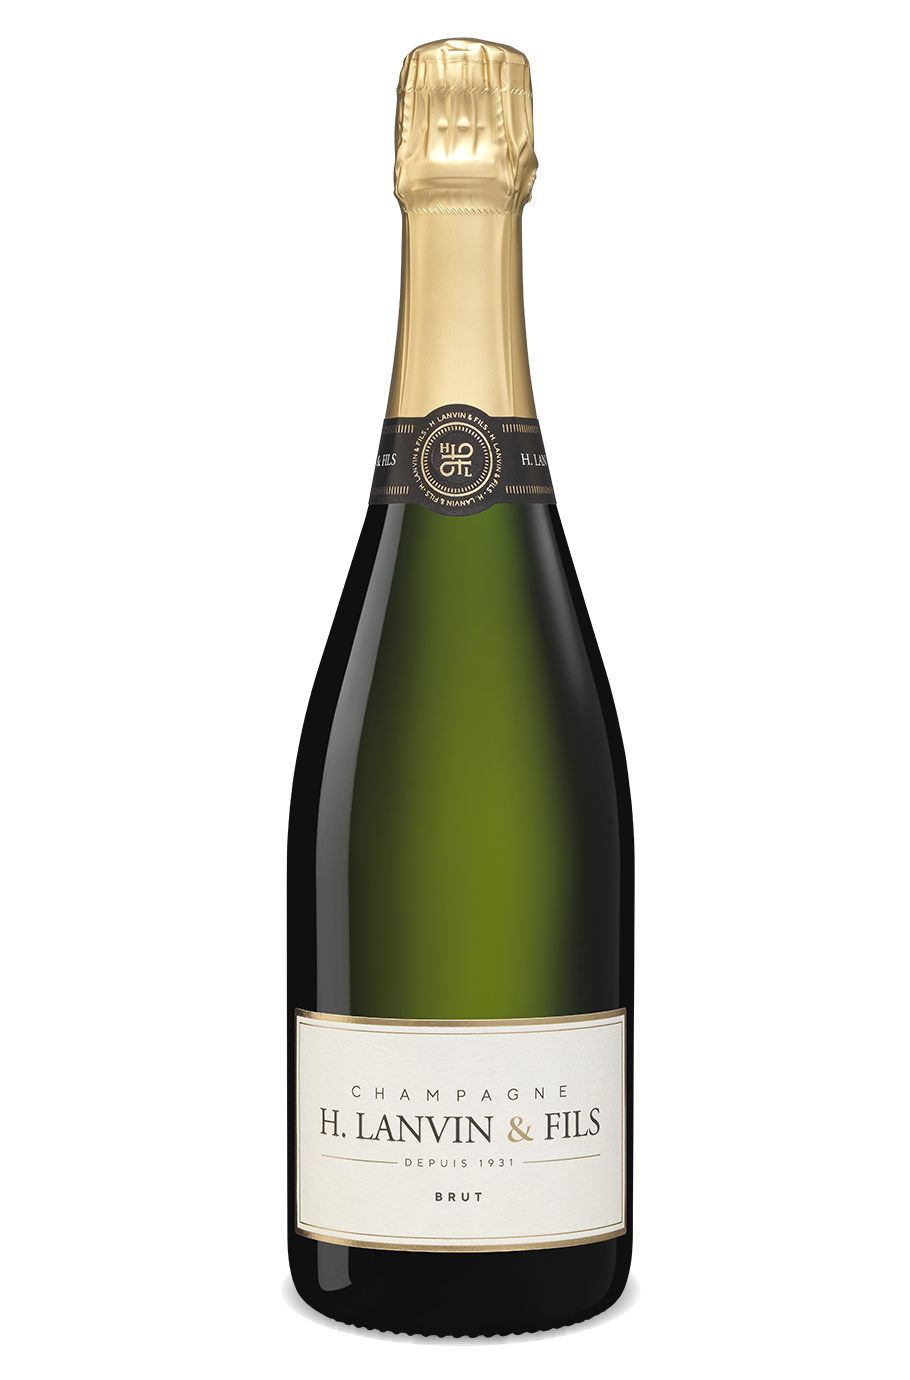 Lanvin & Fils Brut Champagne